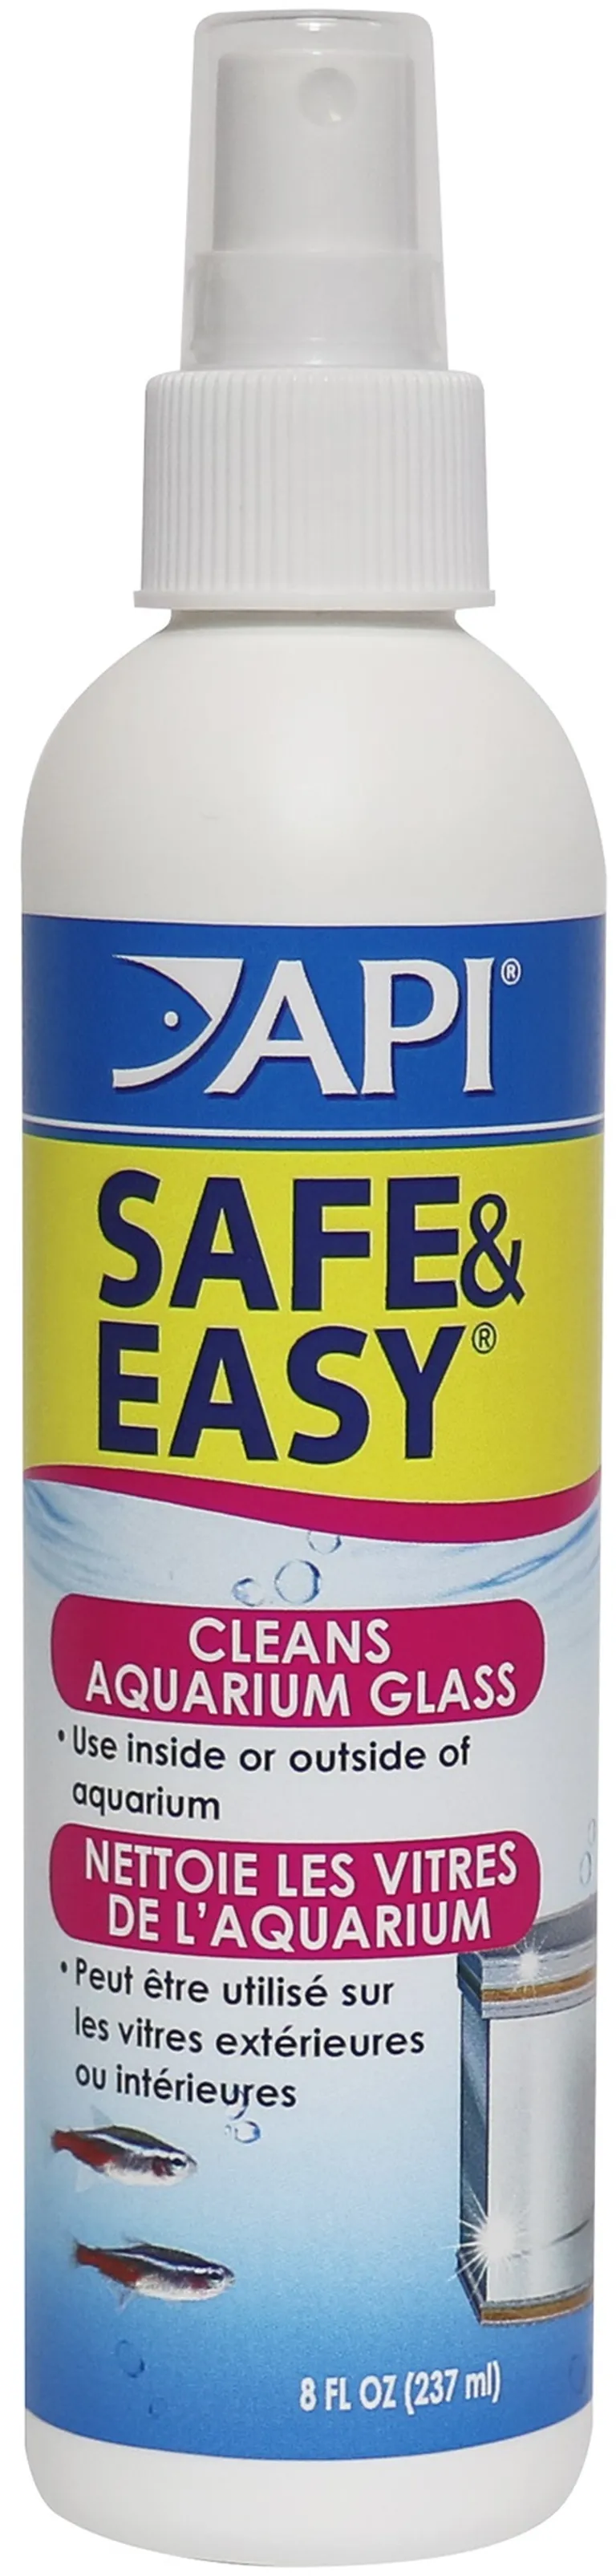 API Safe & Easy Aquarium Cleaner Photo 1